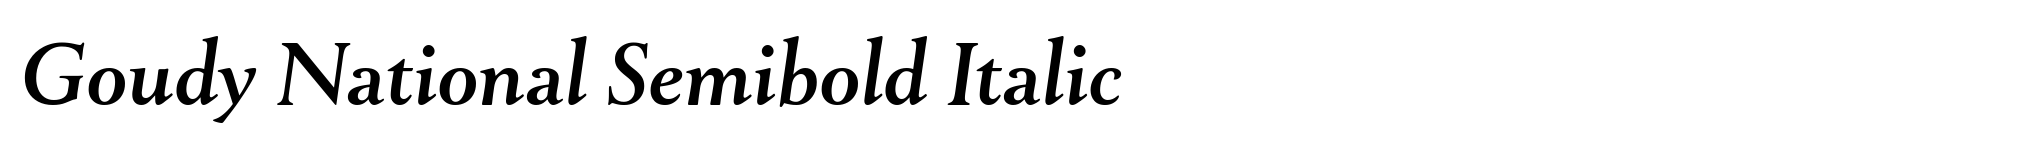 Goudy National Semibold Italic image